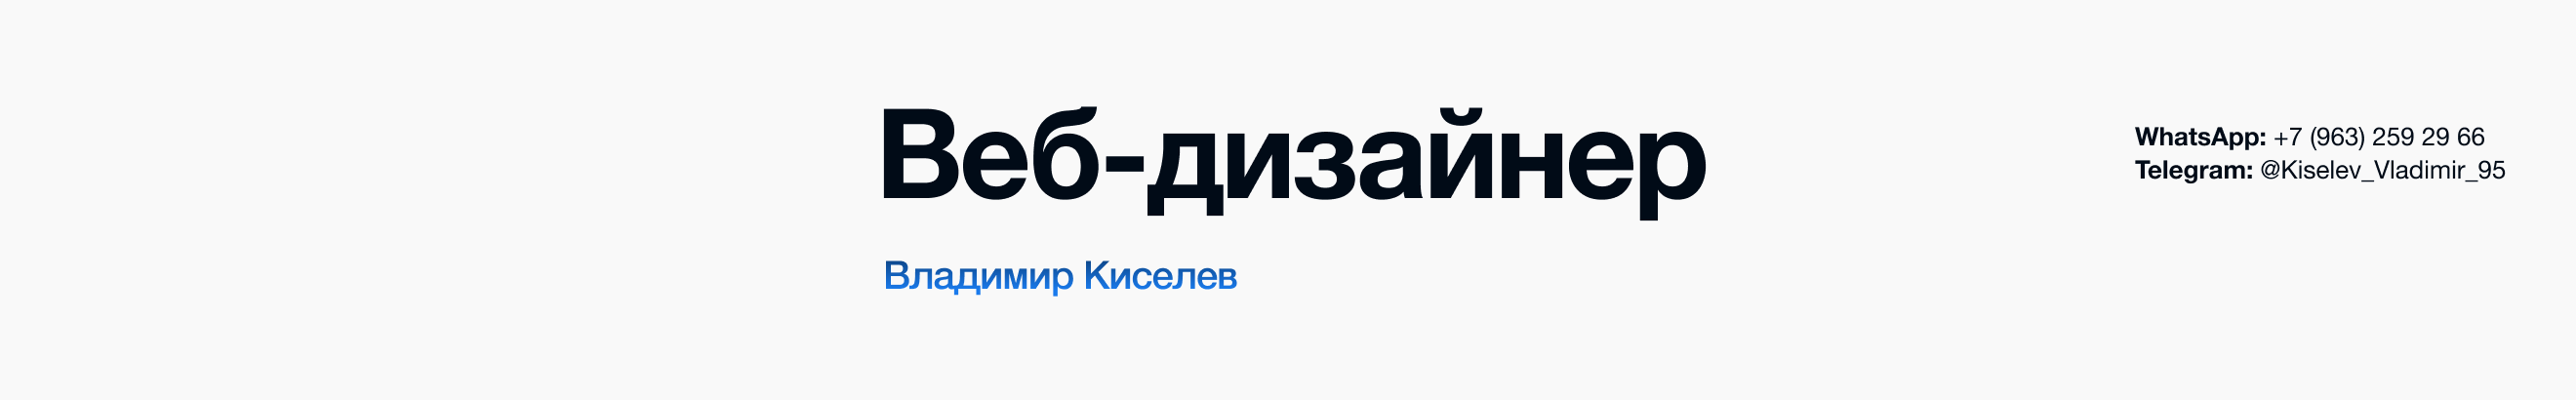 Vladimir Kiselev's profile banner